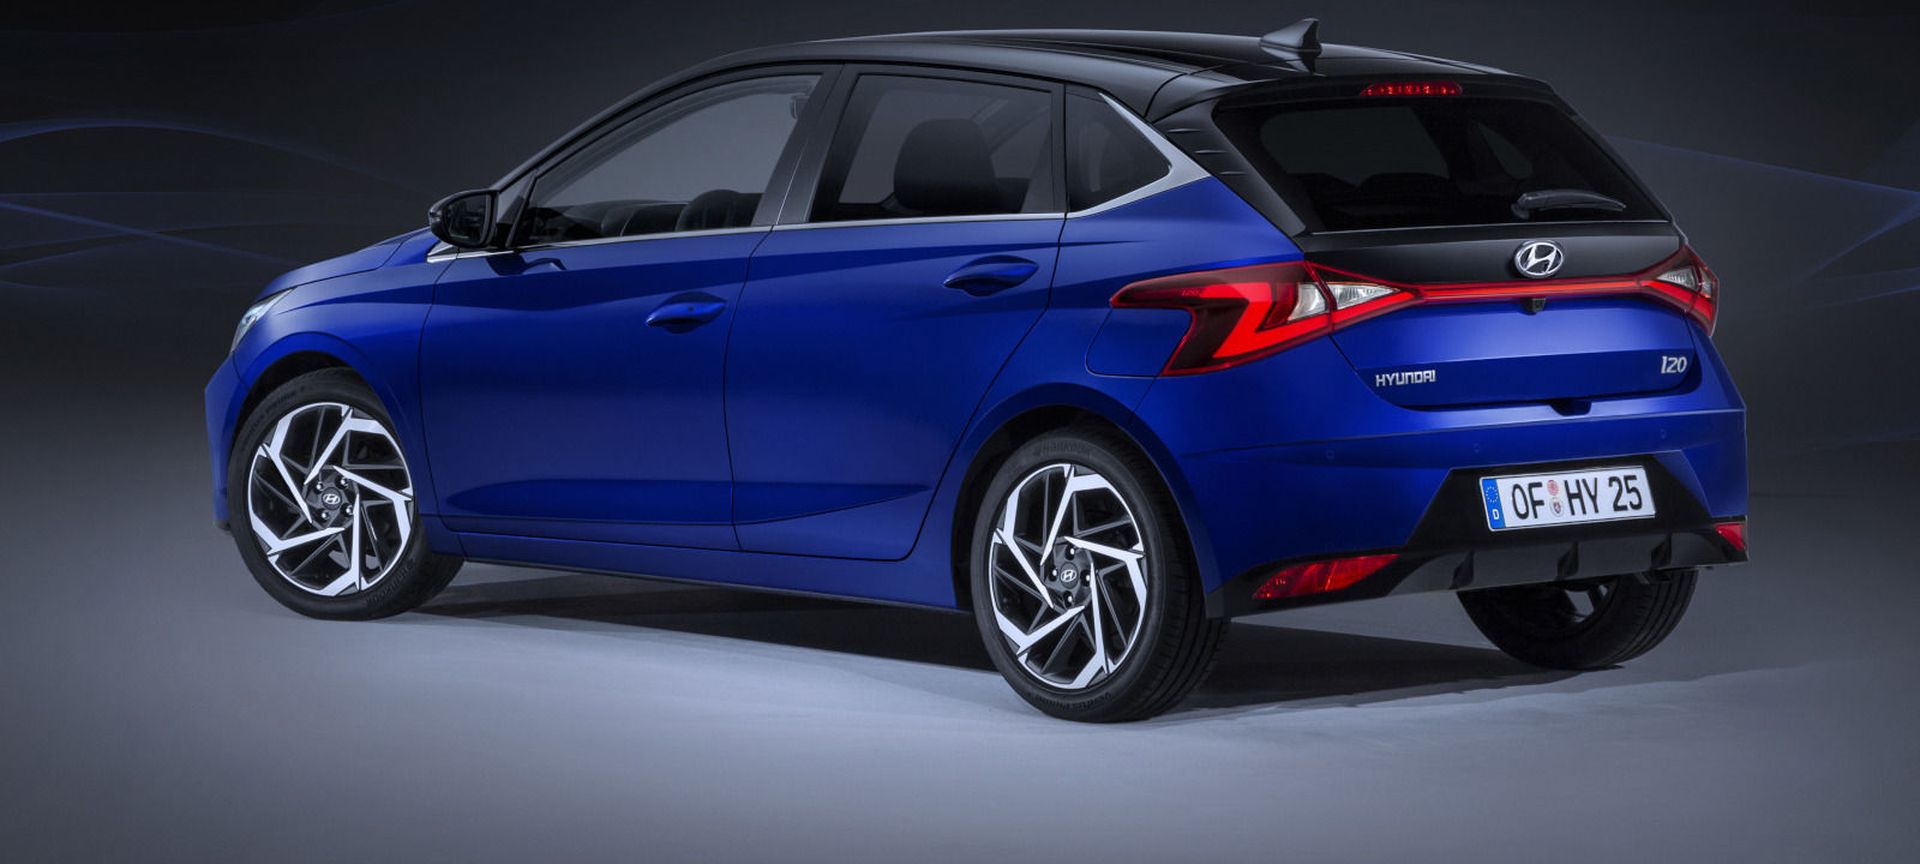 Hyundai i20 Nowej Generacji producent pokazuje nowe